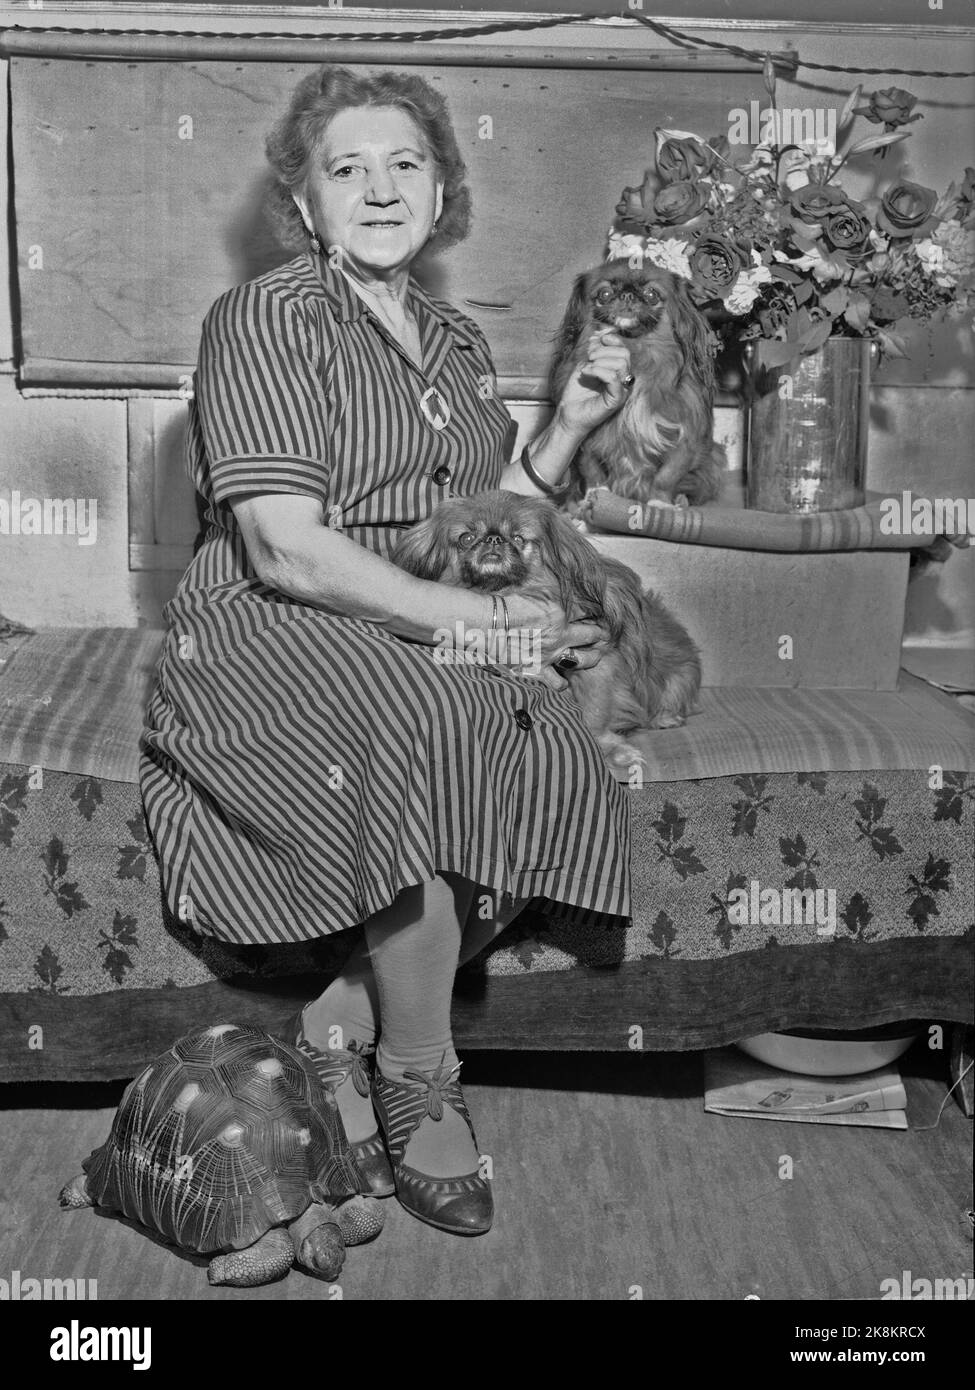 Oslo 19490928 Mme Anna Leonardi de Circus Empress avec ses chiens et une bonne tortue adulte. Photo: NIC. / NTB SPBEKEIL Banque D'Images